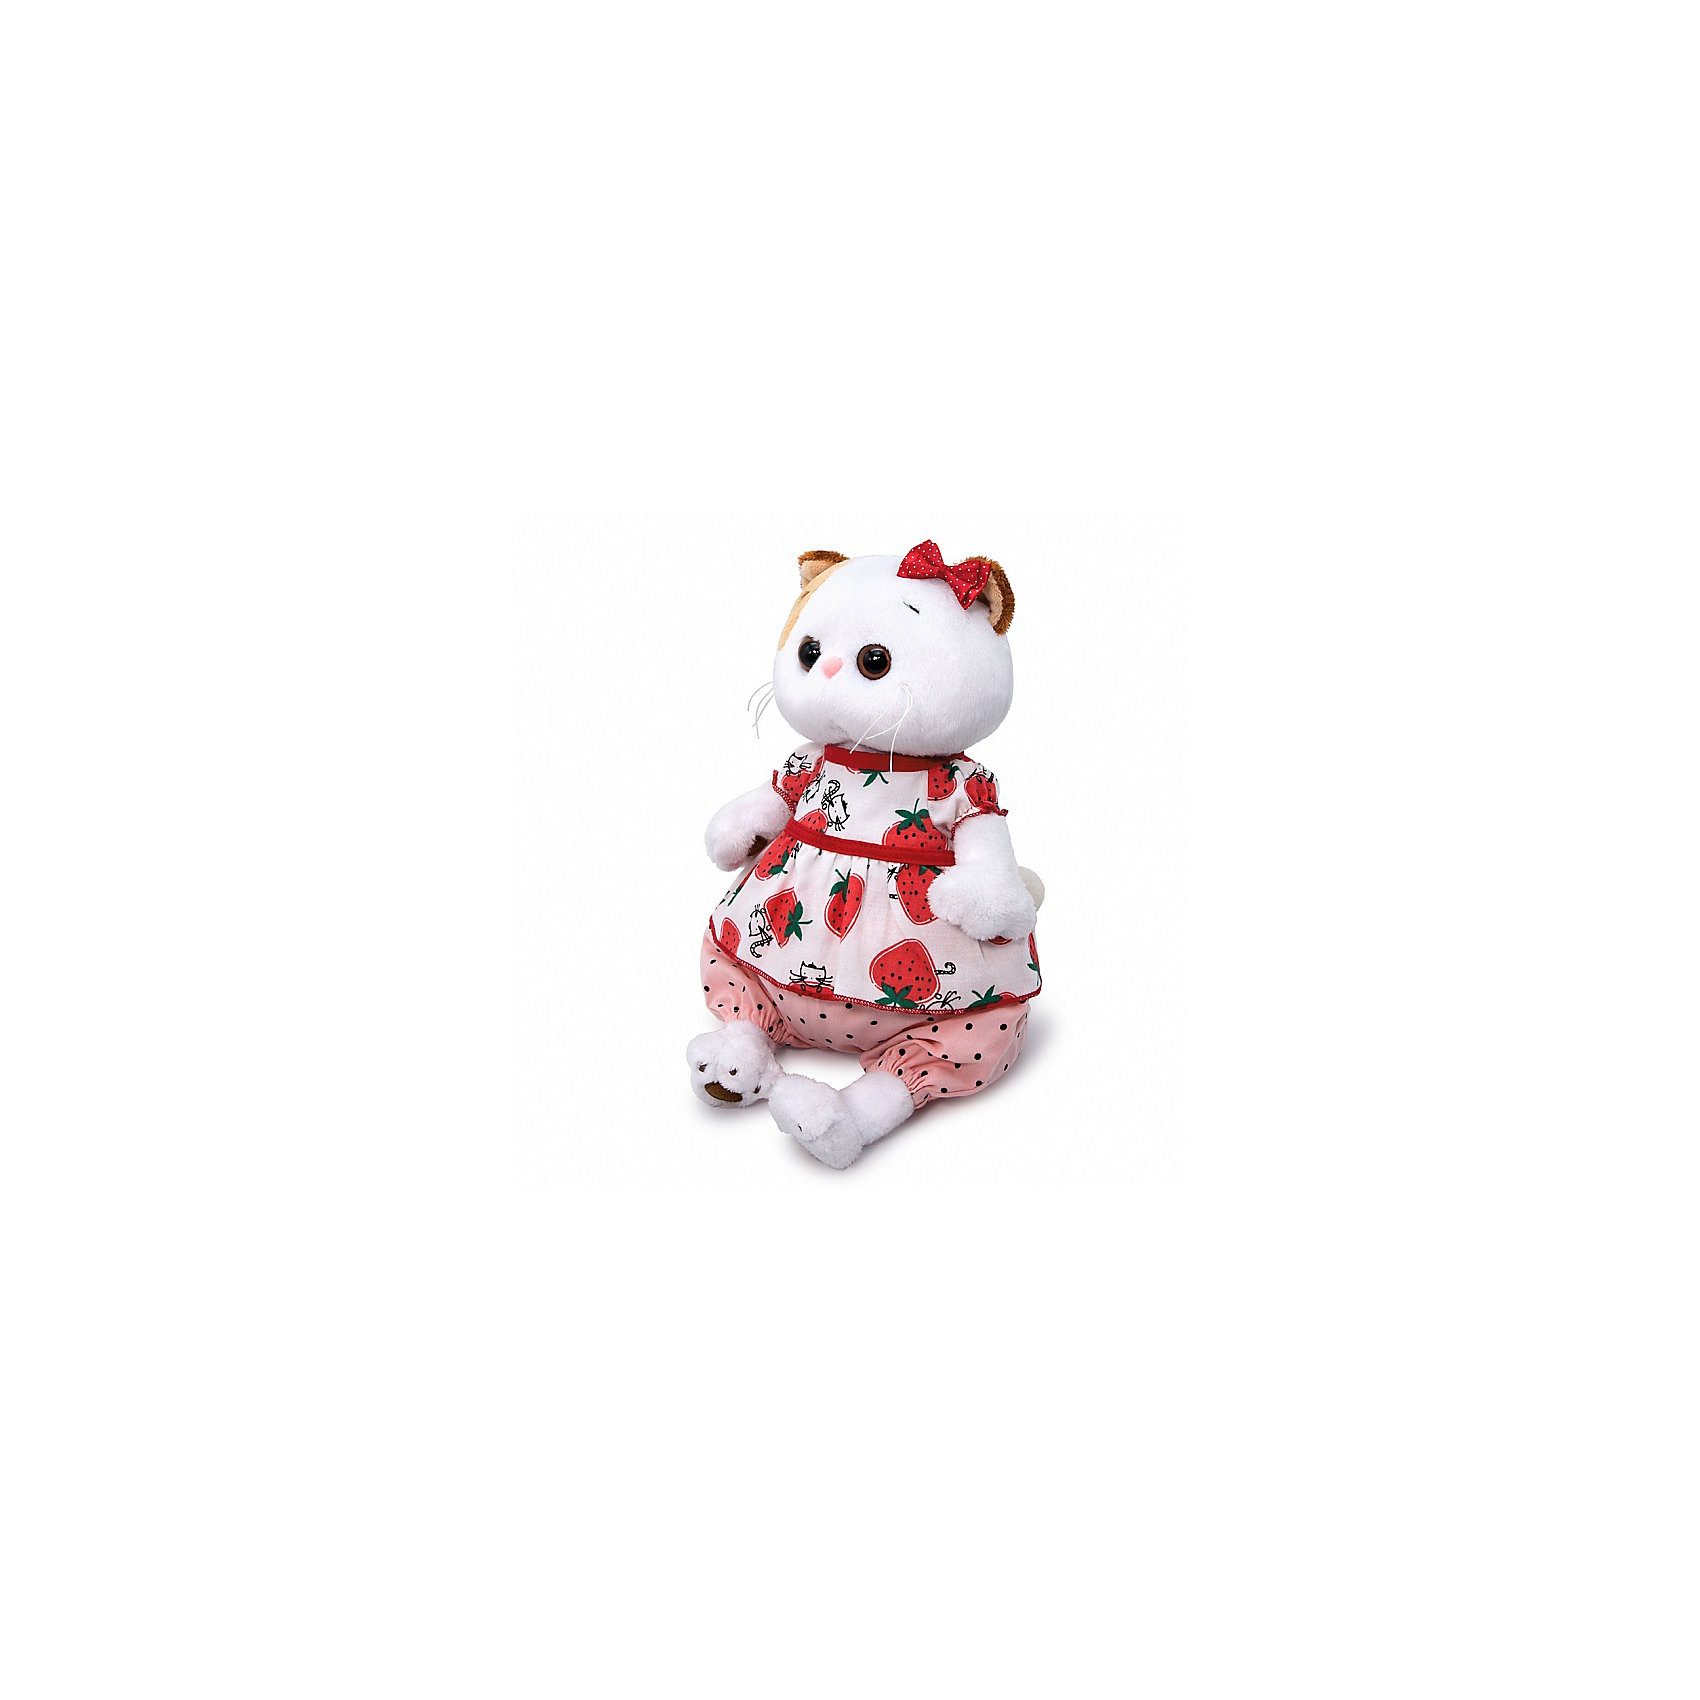 Мягкая игрушка Кошечка Ли-Ли в блузке с клубничками, 27 см Budi Basa 16816227